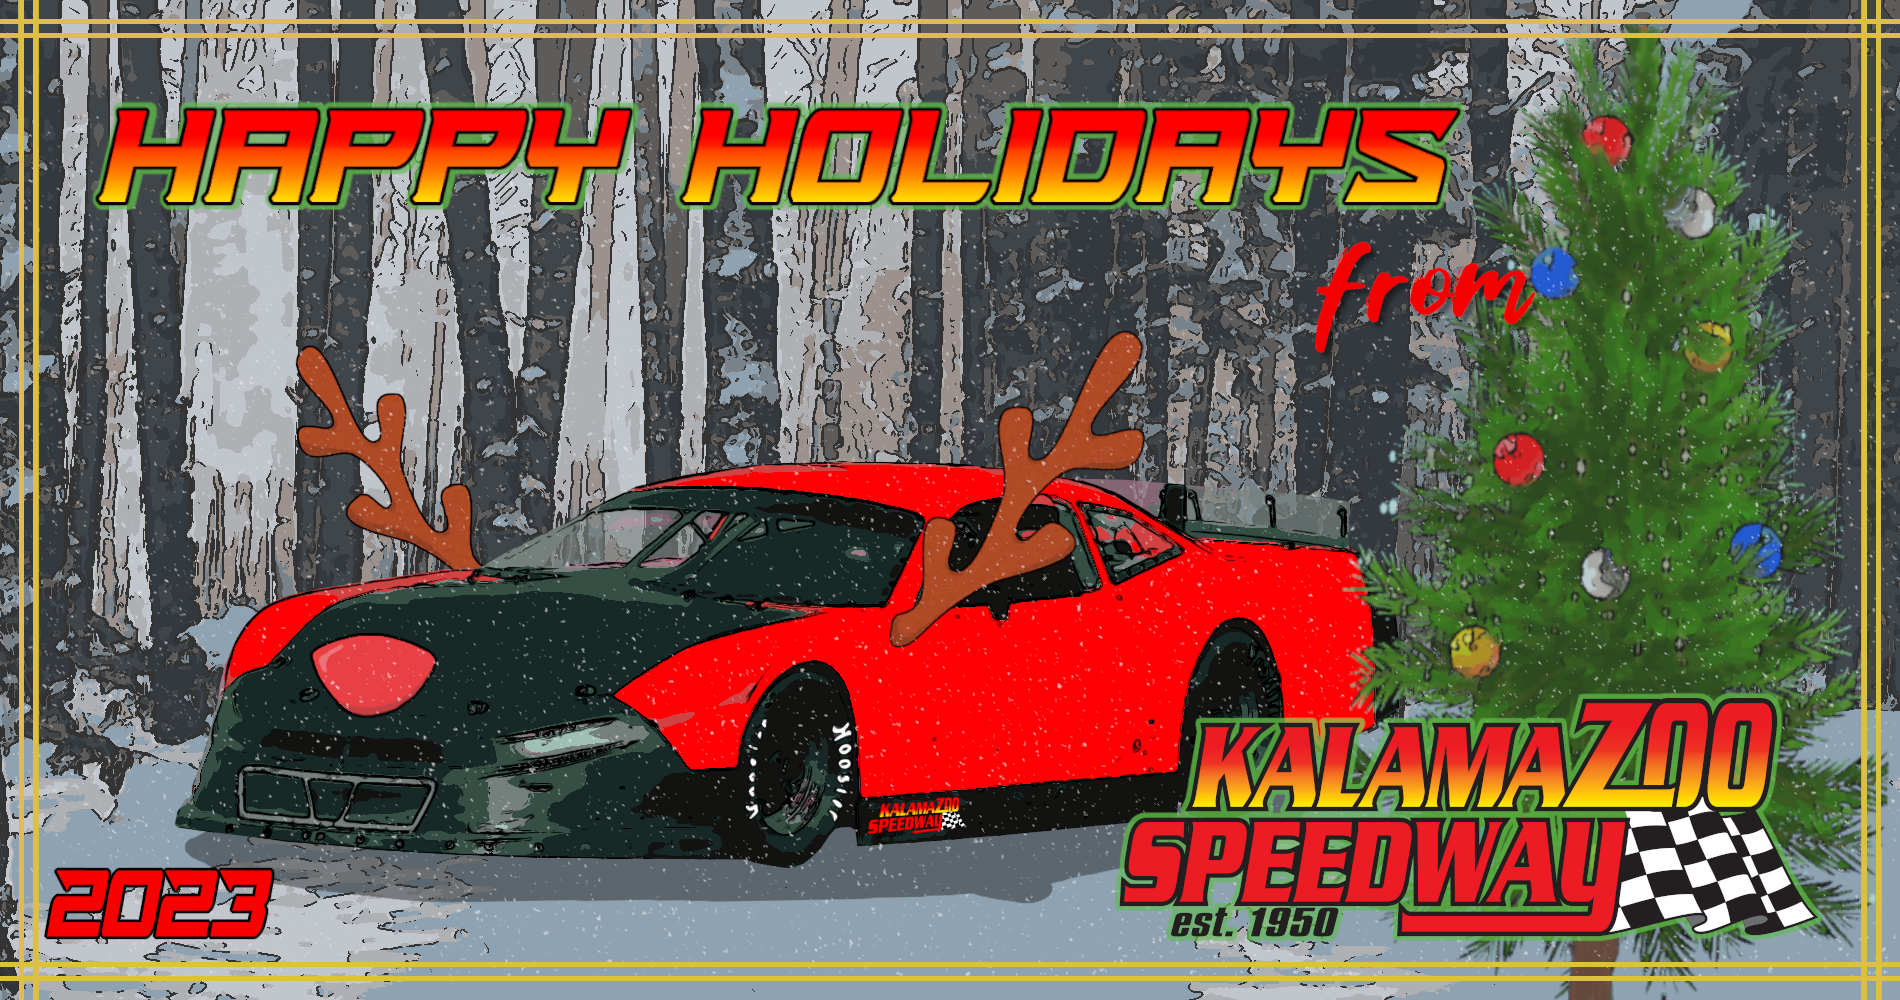 Happy Holidays from the Kalamazoo Speedway Family!